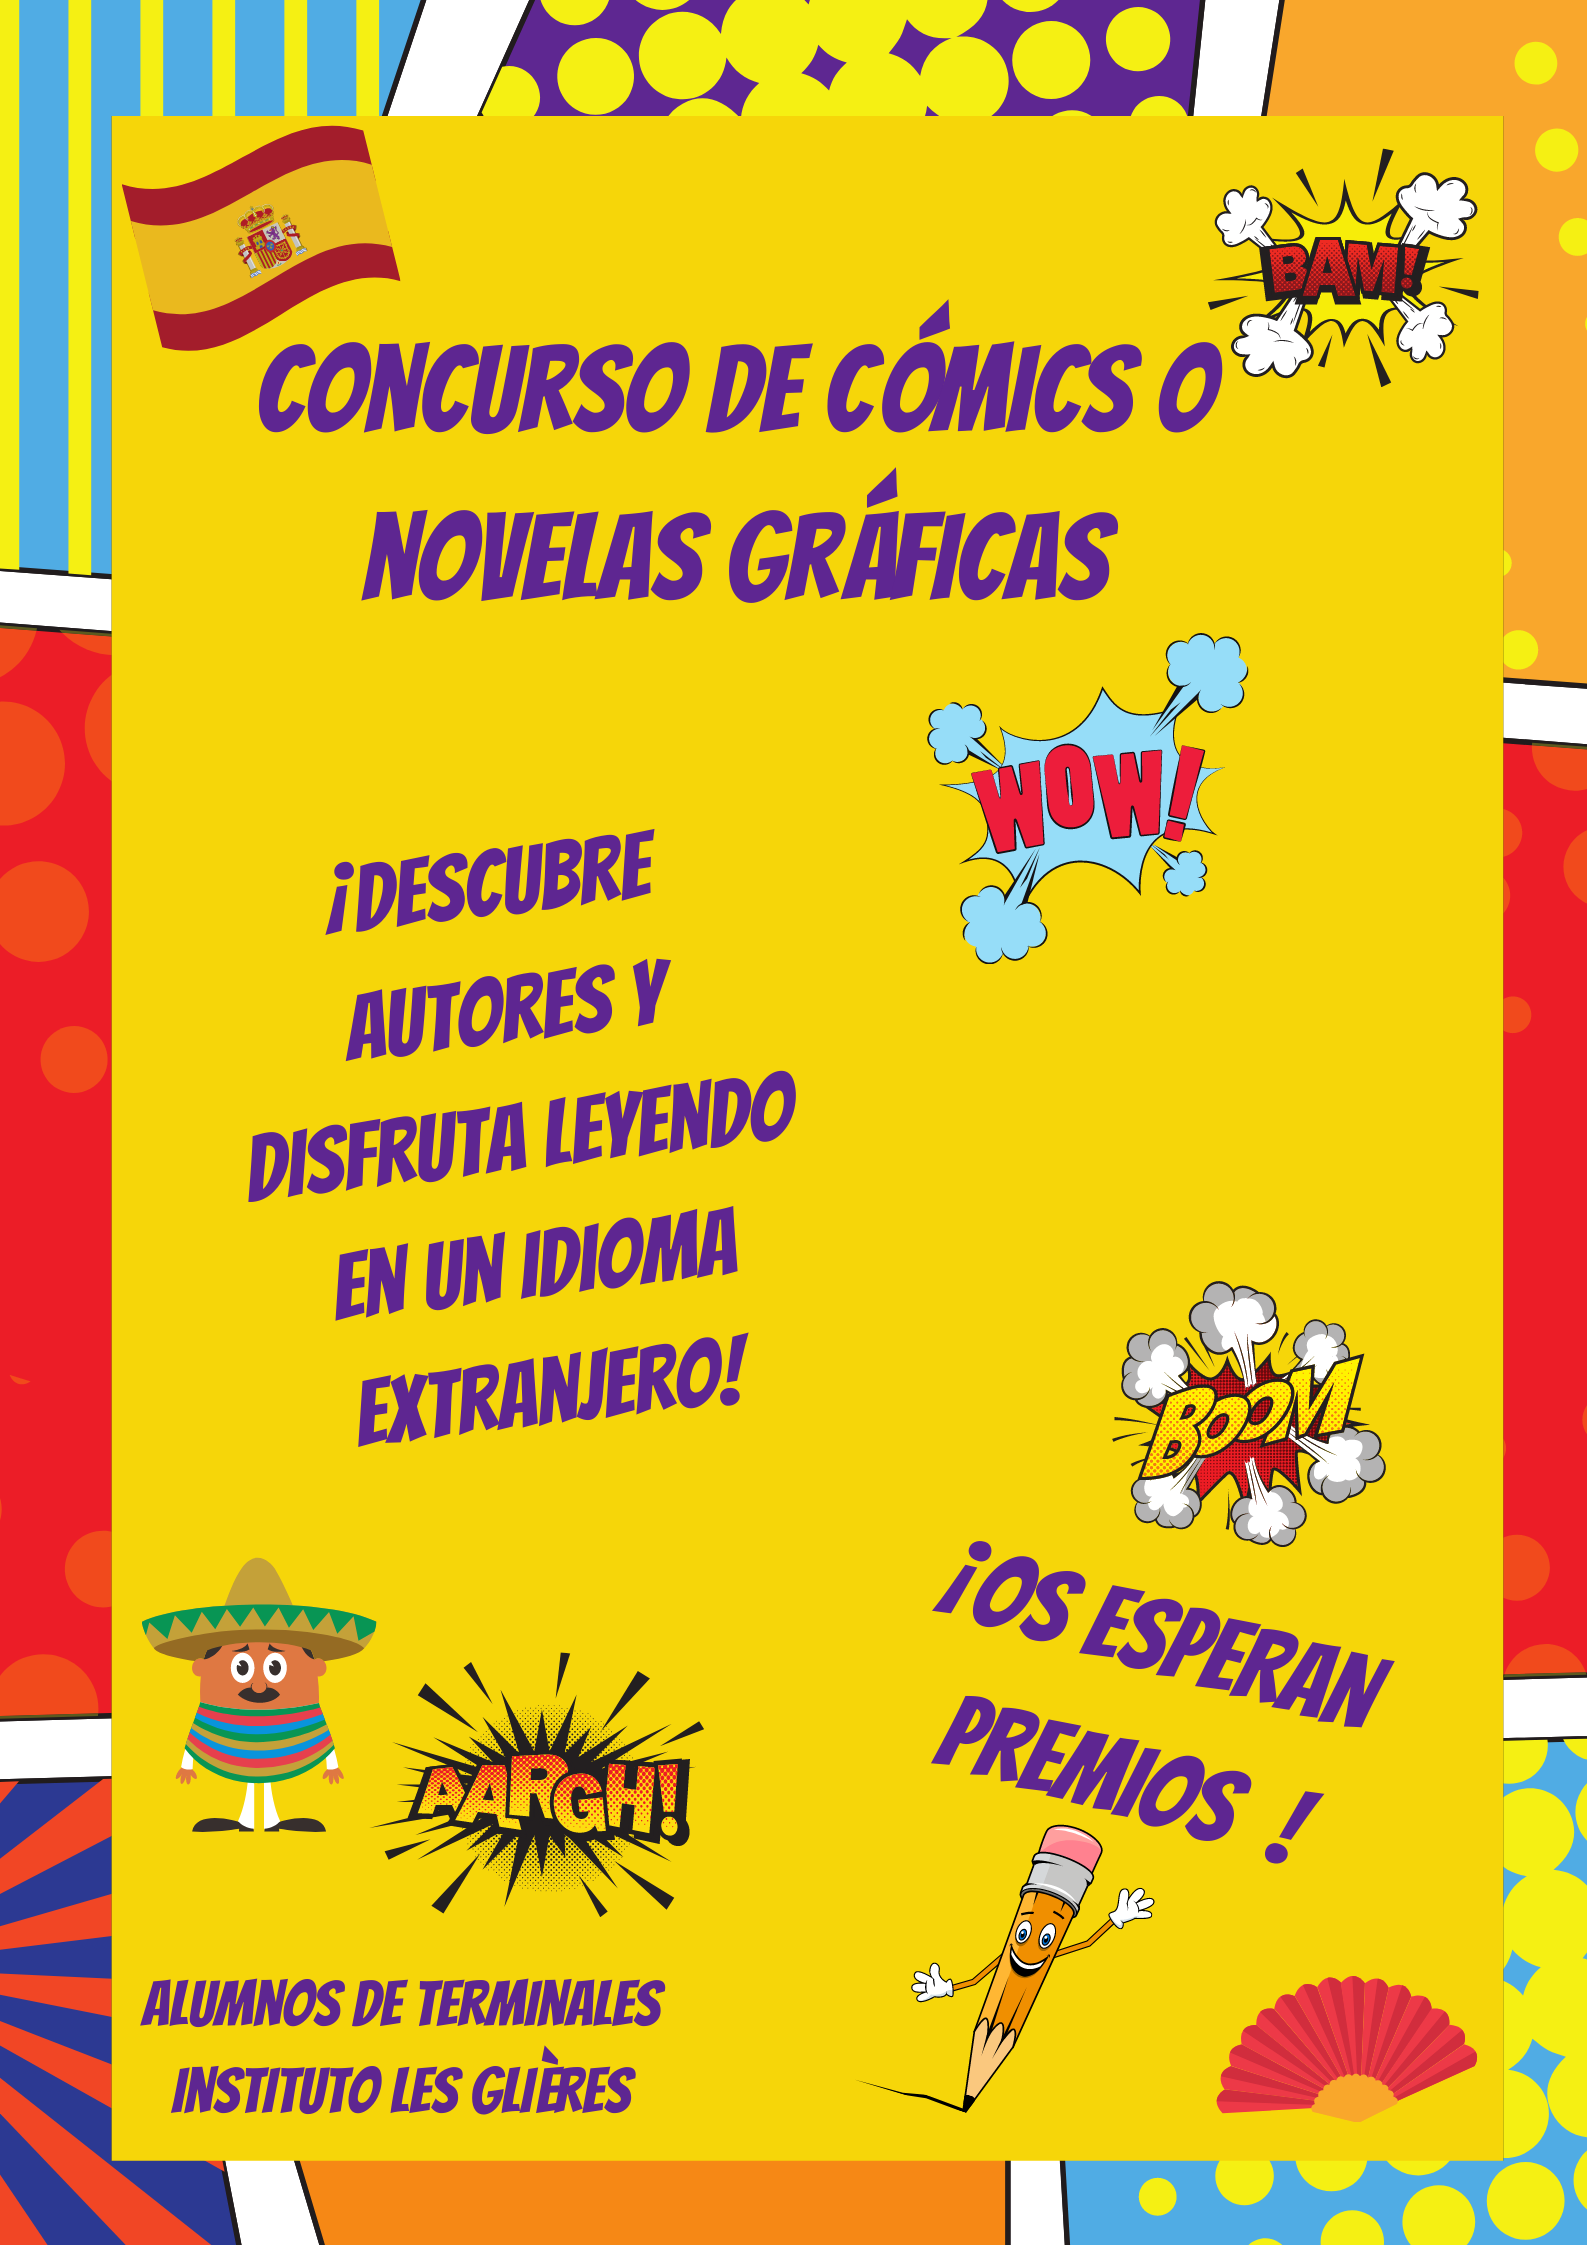 Concurso de cómics o novelas gráficas.png